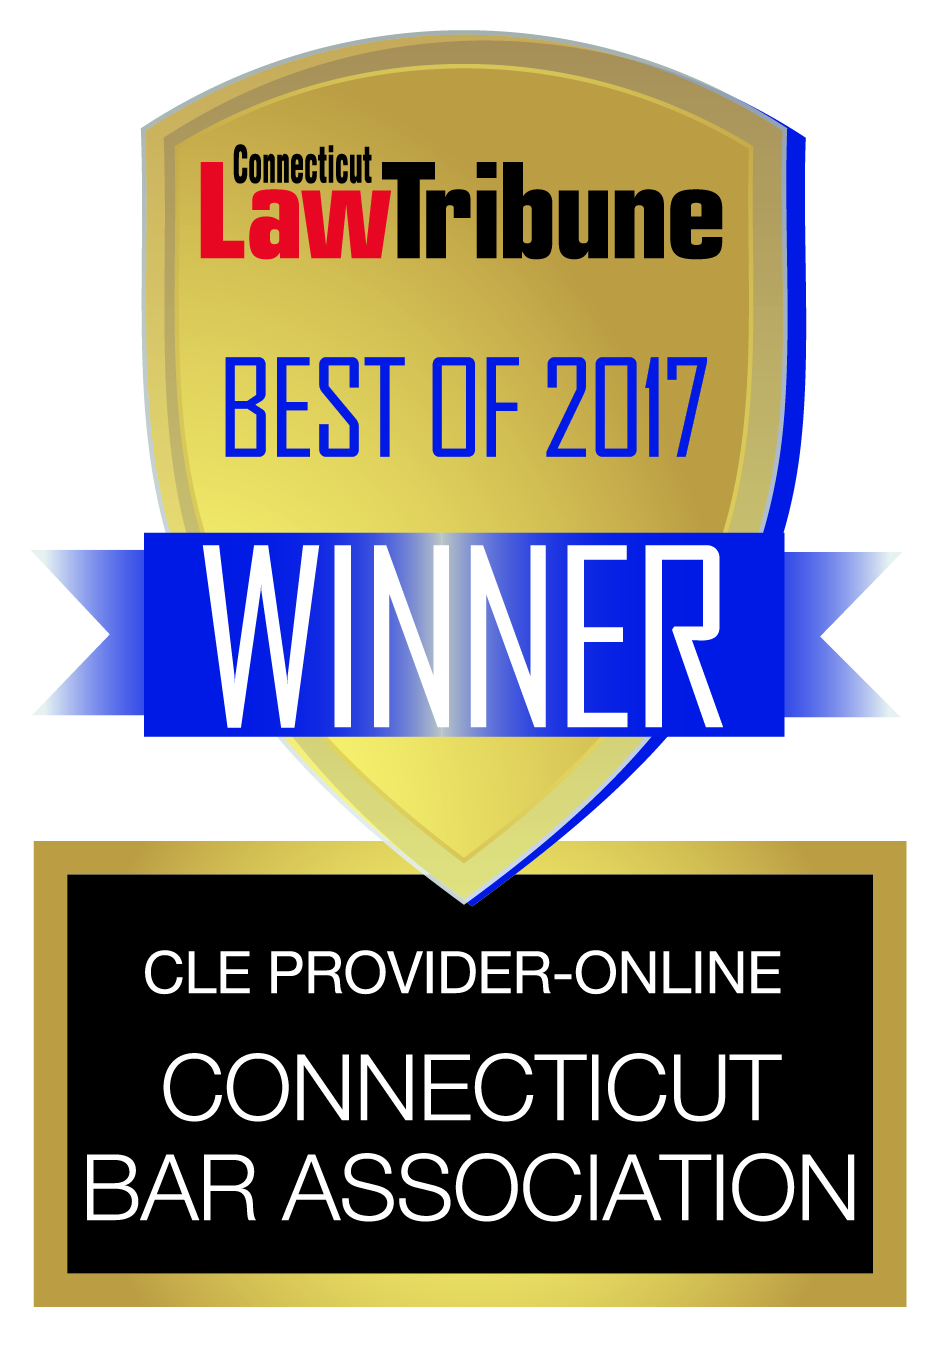 Connecticut Law Tribune 2017 Winner